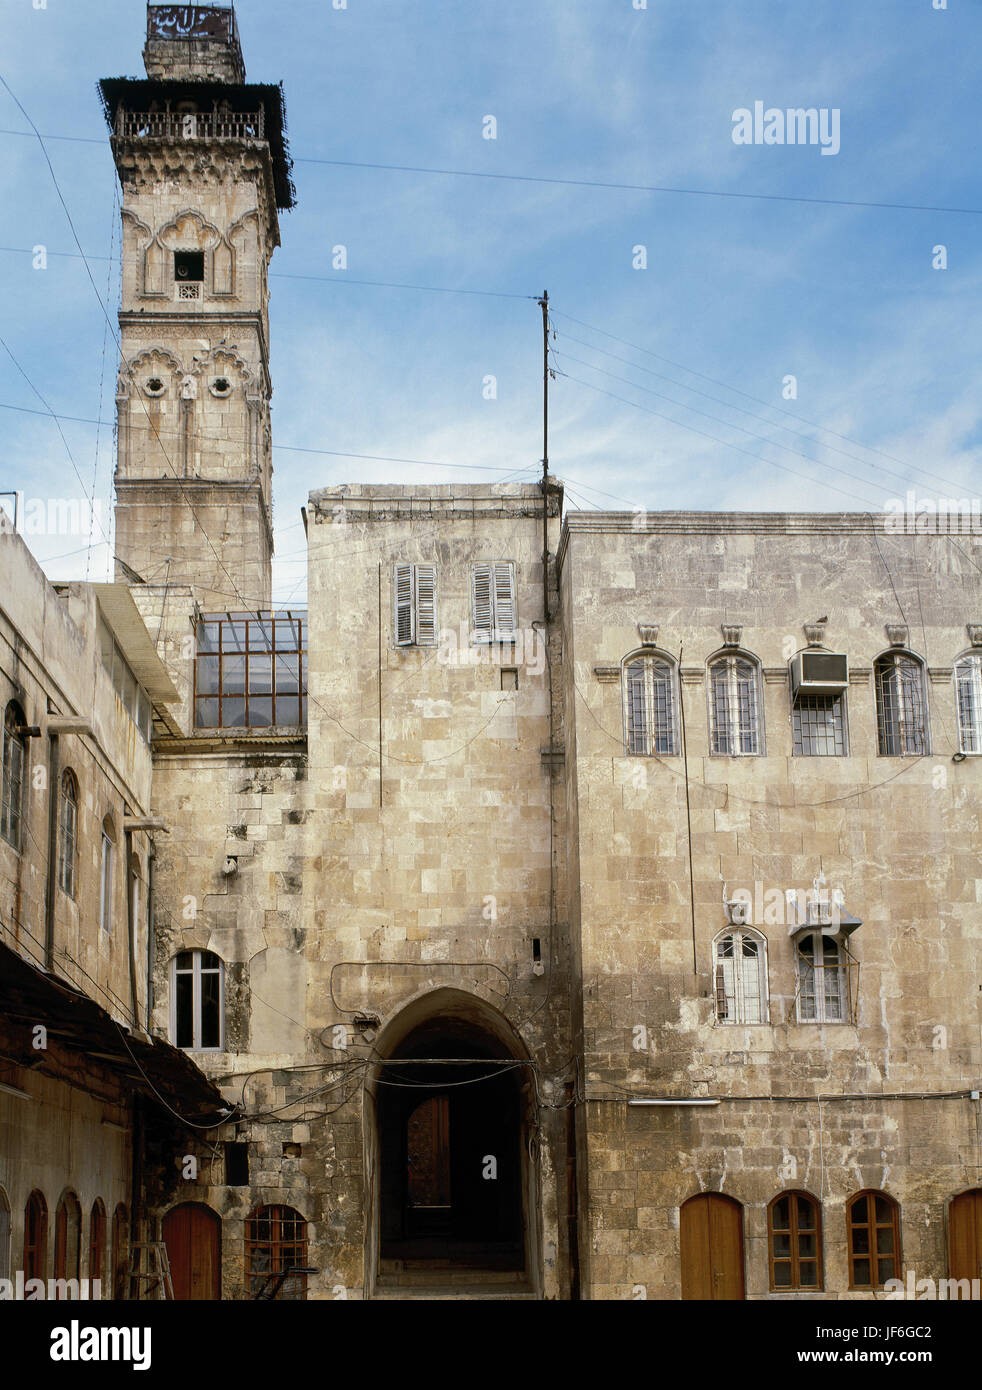 Große Moschee von Aleppo oder die Umayyaden-Moschee von Aleppo. Im 8. Jahrhundert erbaut. Das Minarett, vor Destrucion in den syrischen Bürgerkrieg im April 2013. Stockfoto